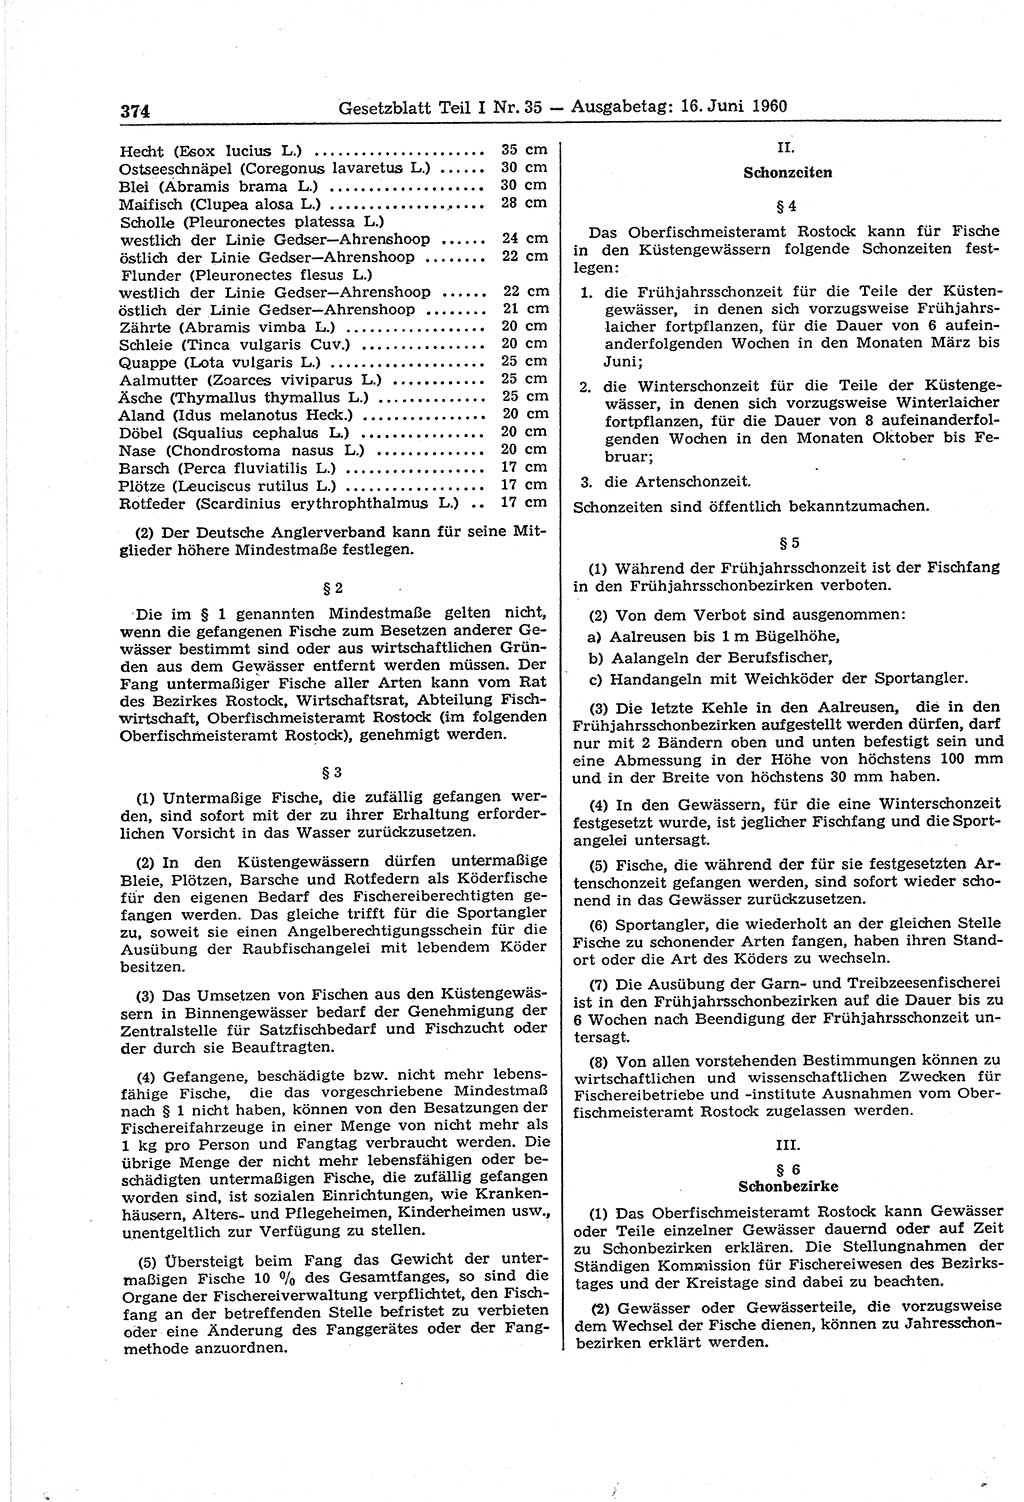 Gesetzblatt (GBl.) der Deutschen Demokratischen Republik (DDR) Teil Ⅰ 1960, Seite 374 (GBl. DDR Ⅰ 1960, S. 374)